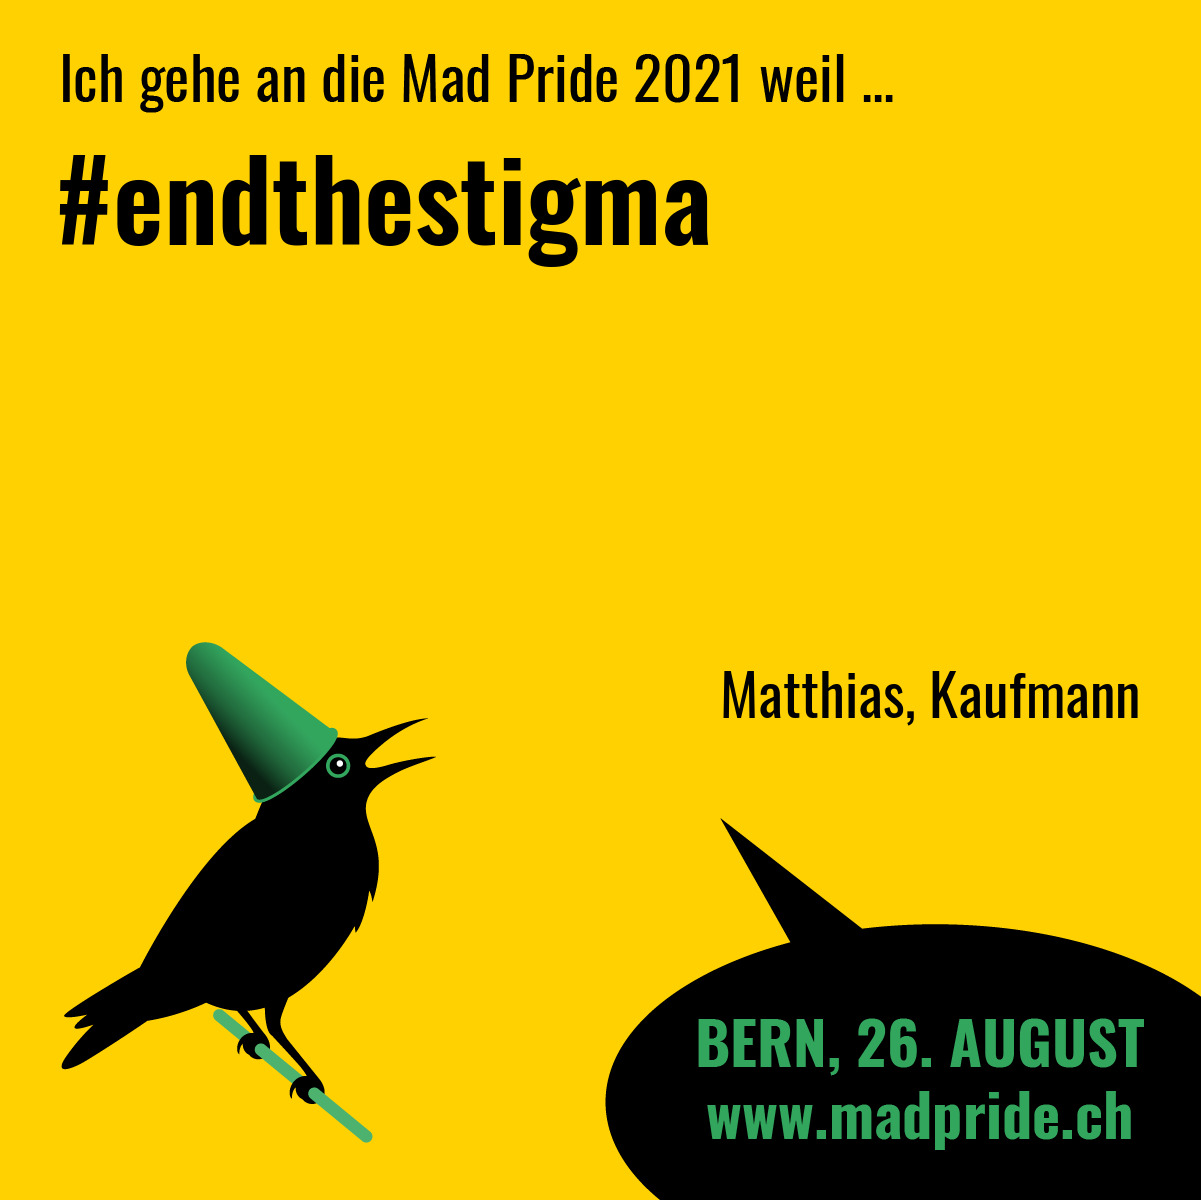 #endthestigma Matthias, Kaufmann